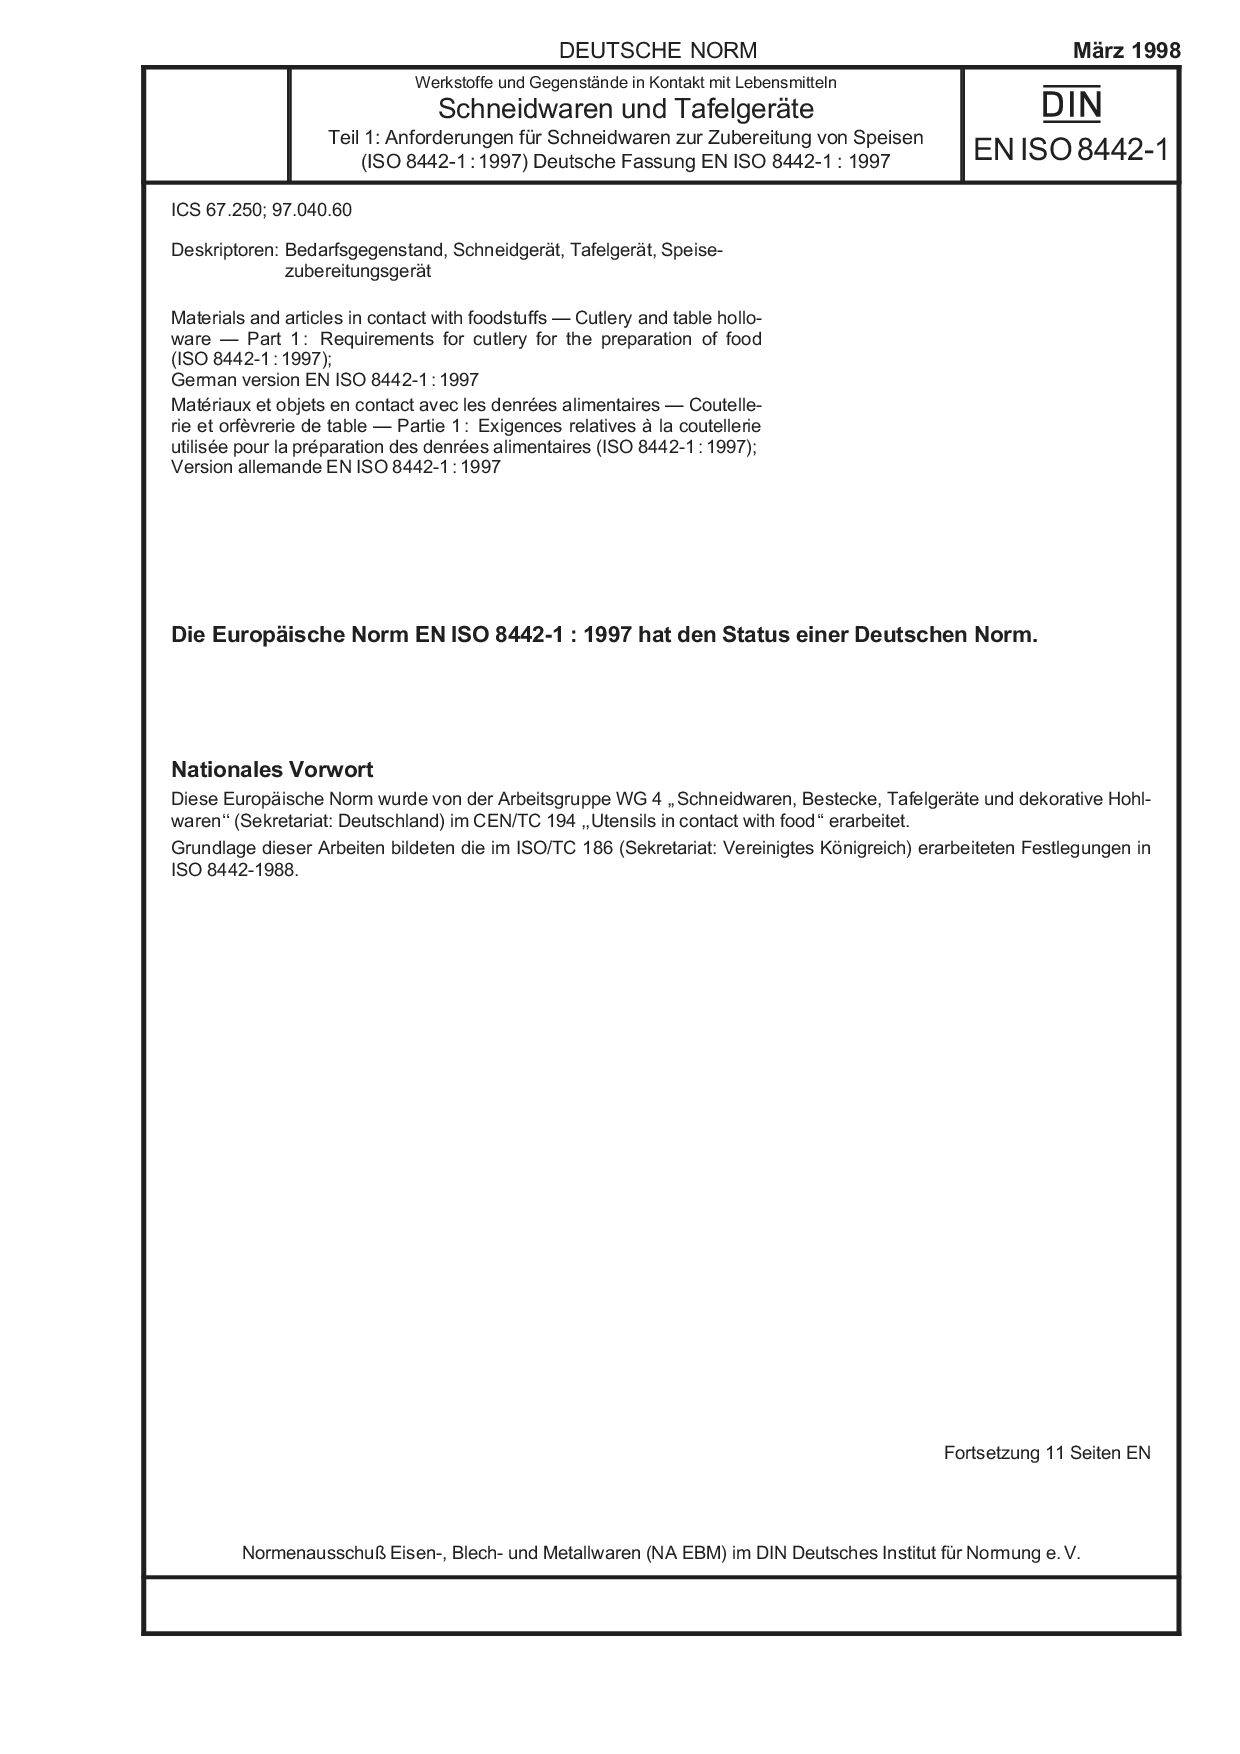 DIN EN ISO 8442-1:1998封面图